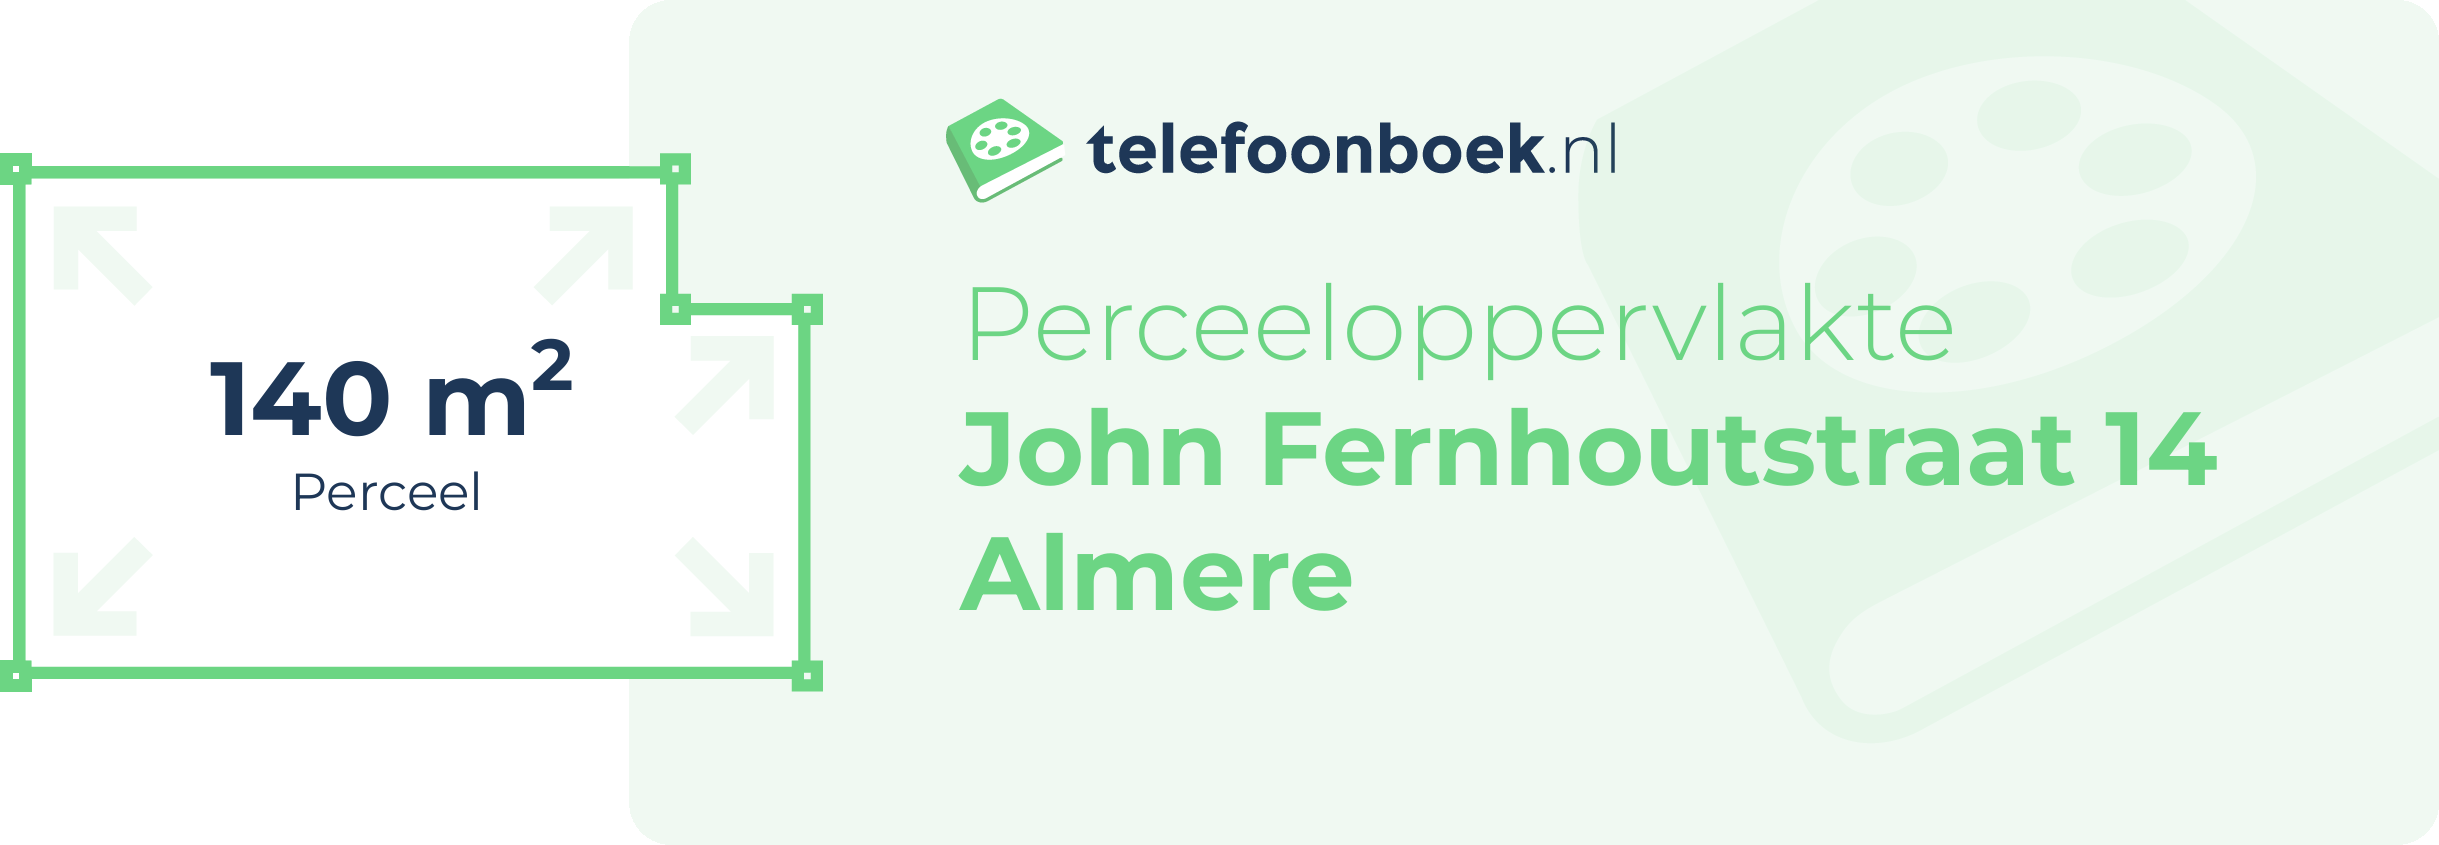 Perceeloppervlakte John Fernhoutstraat 14 Almere